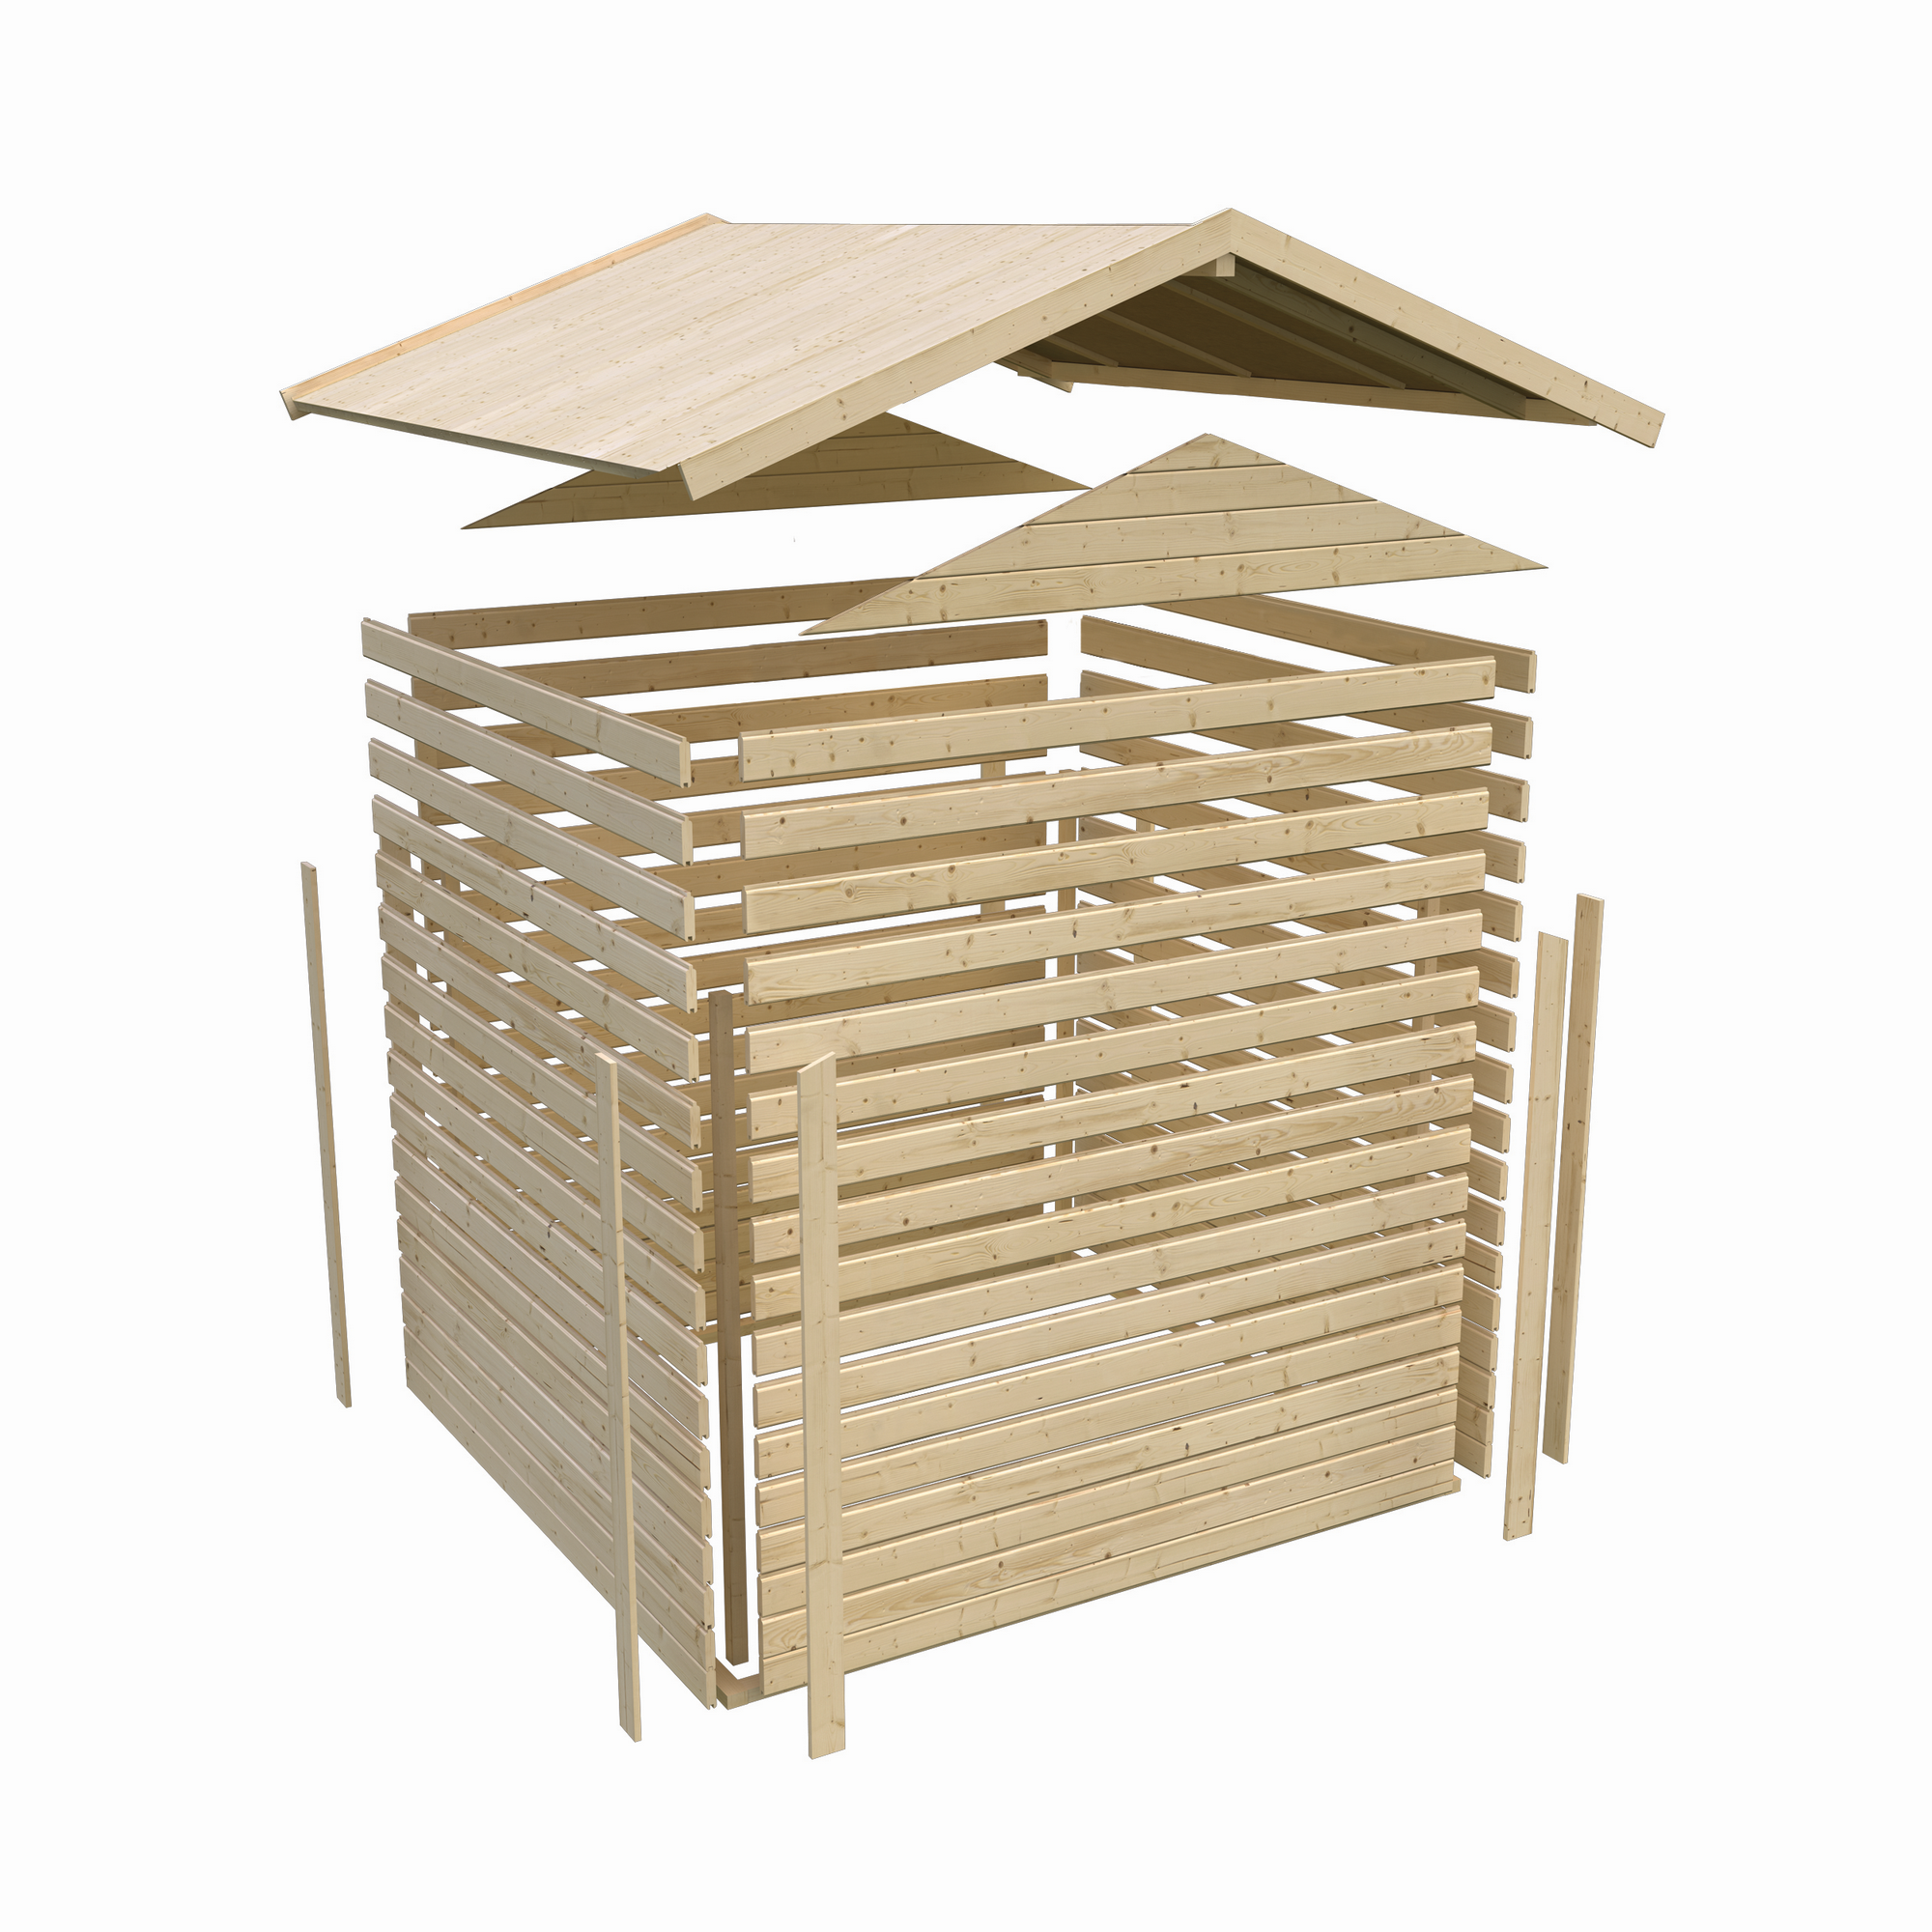 Gartenhaus mit Sauna 'Alejandro' terragrau 9 kW Bio-Ofen externe Steuerung 304 x 304 x 250 cm + product picture